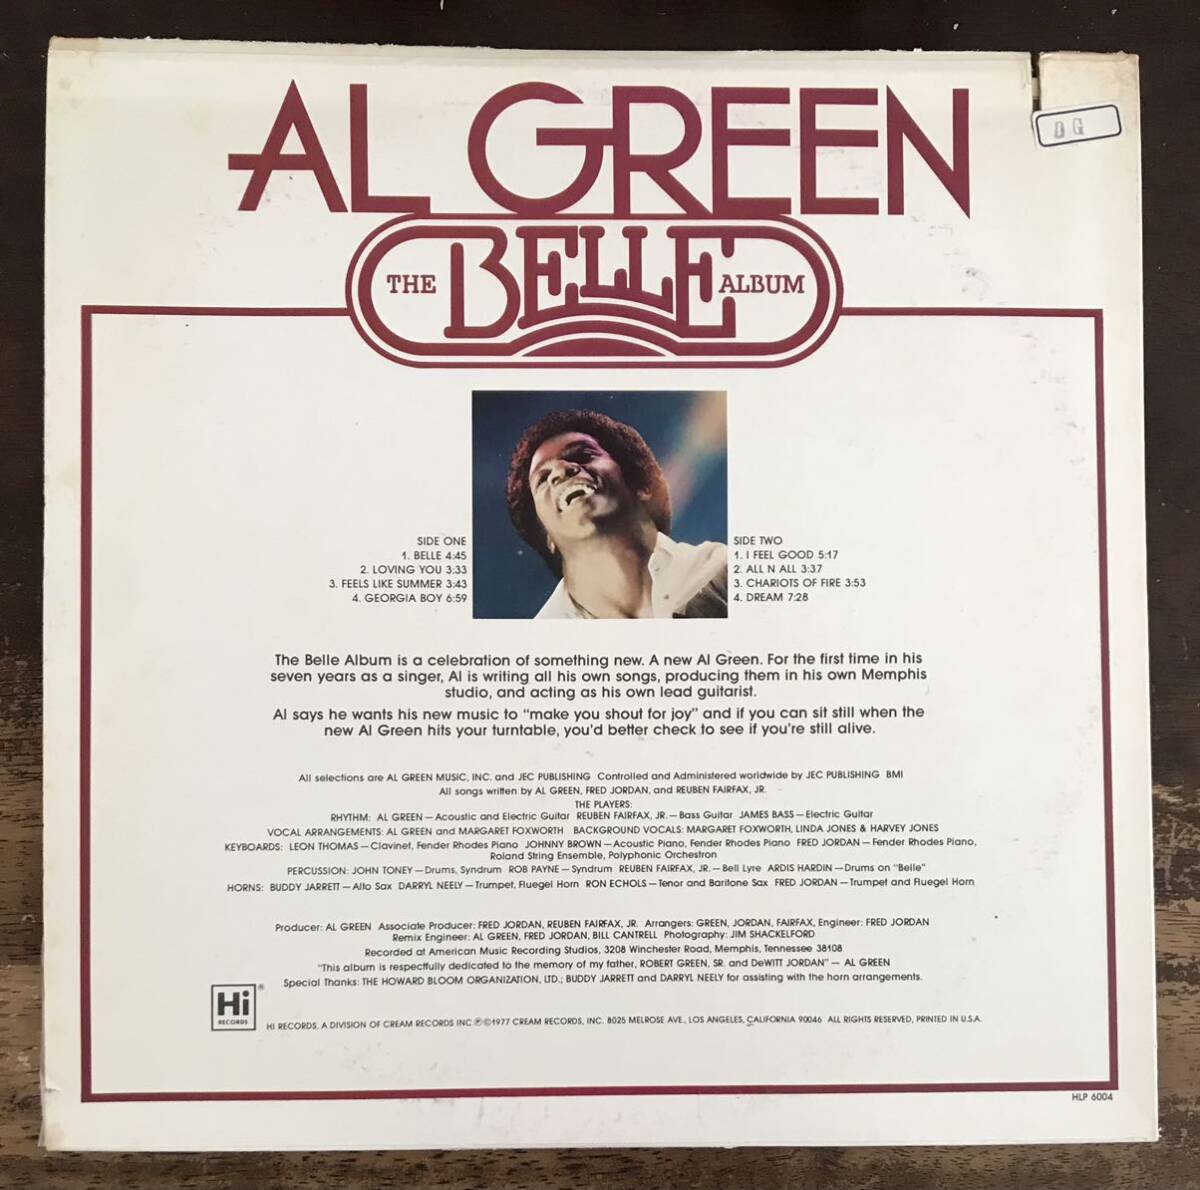 USオリジナル盤■AL GREEN ■アル・グリーン■The Belle Album / 1LP / 1977 Hi Records / US Original / 歴史的名盤 / レコード / アナ_画像2